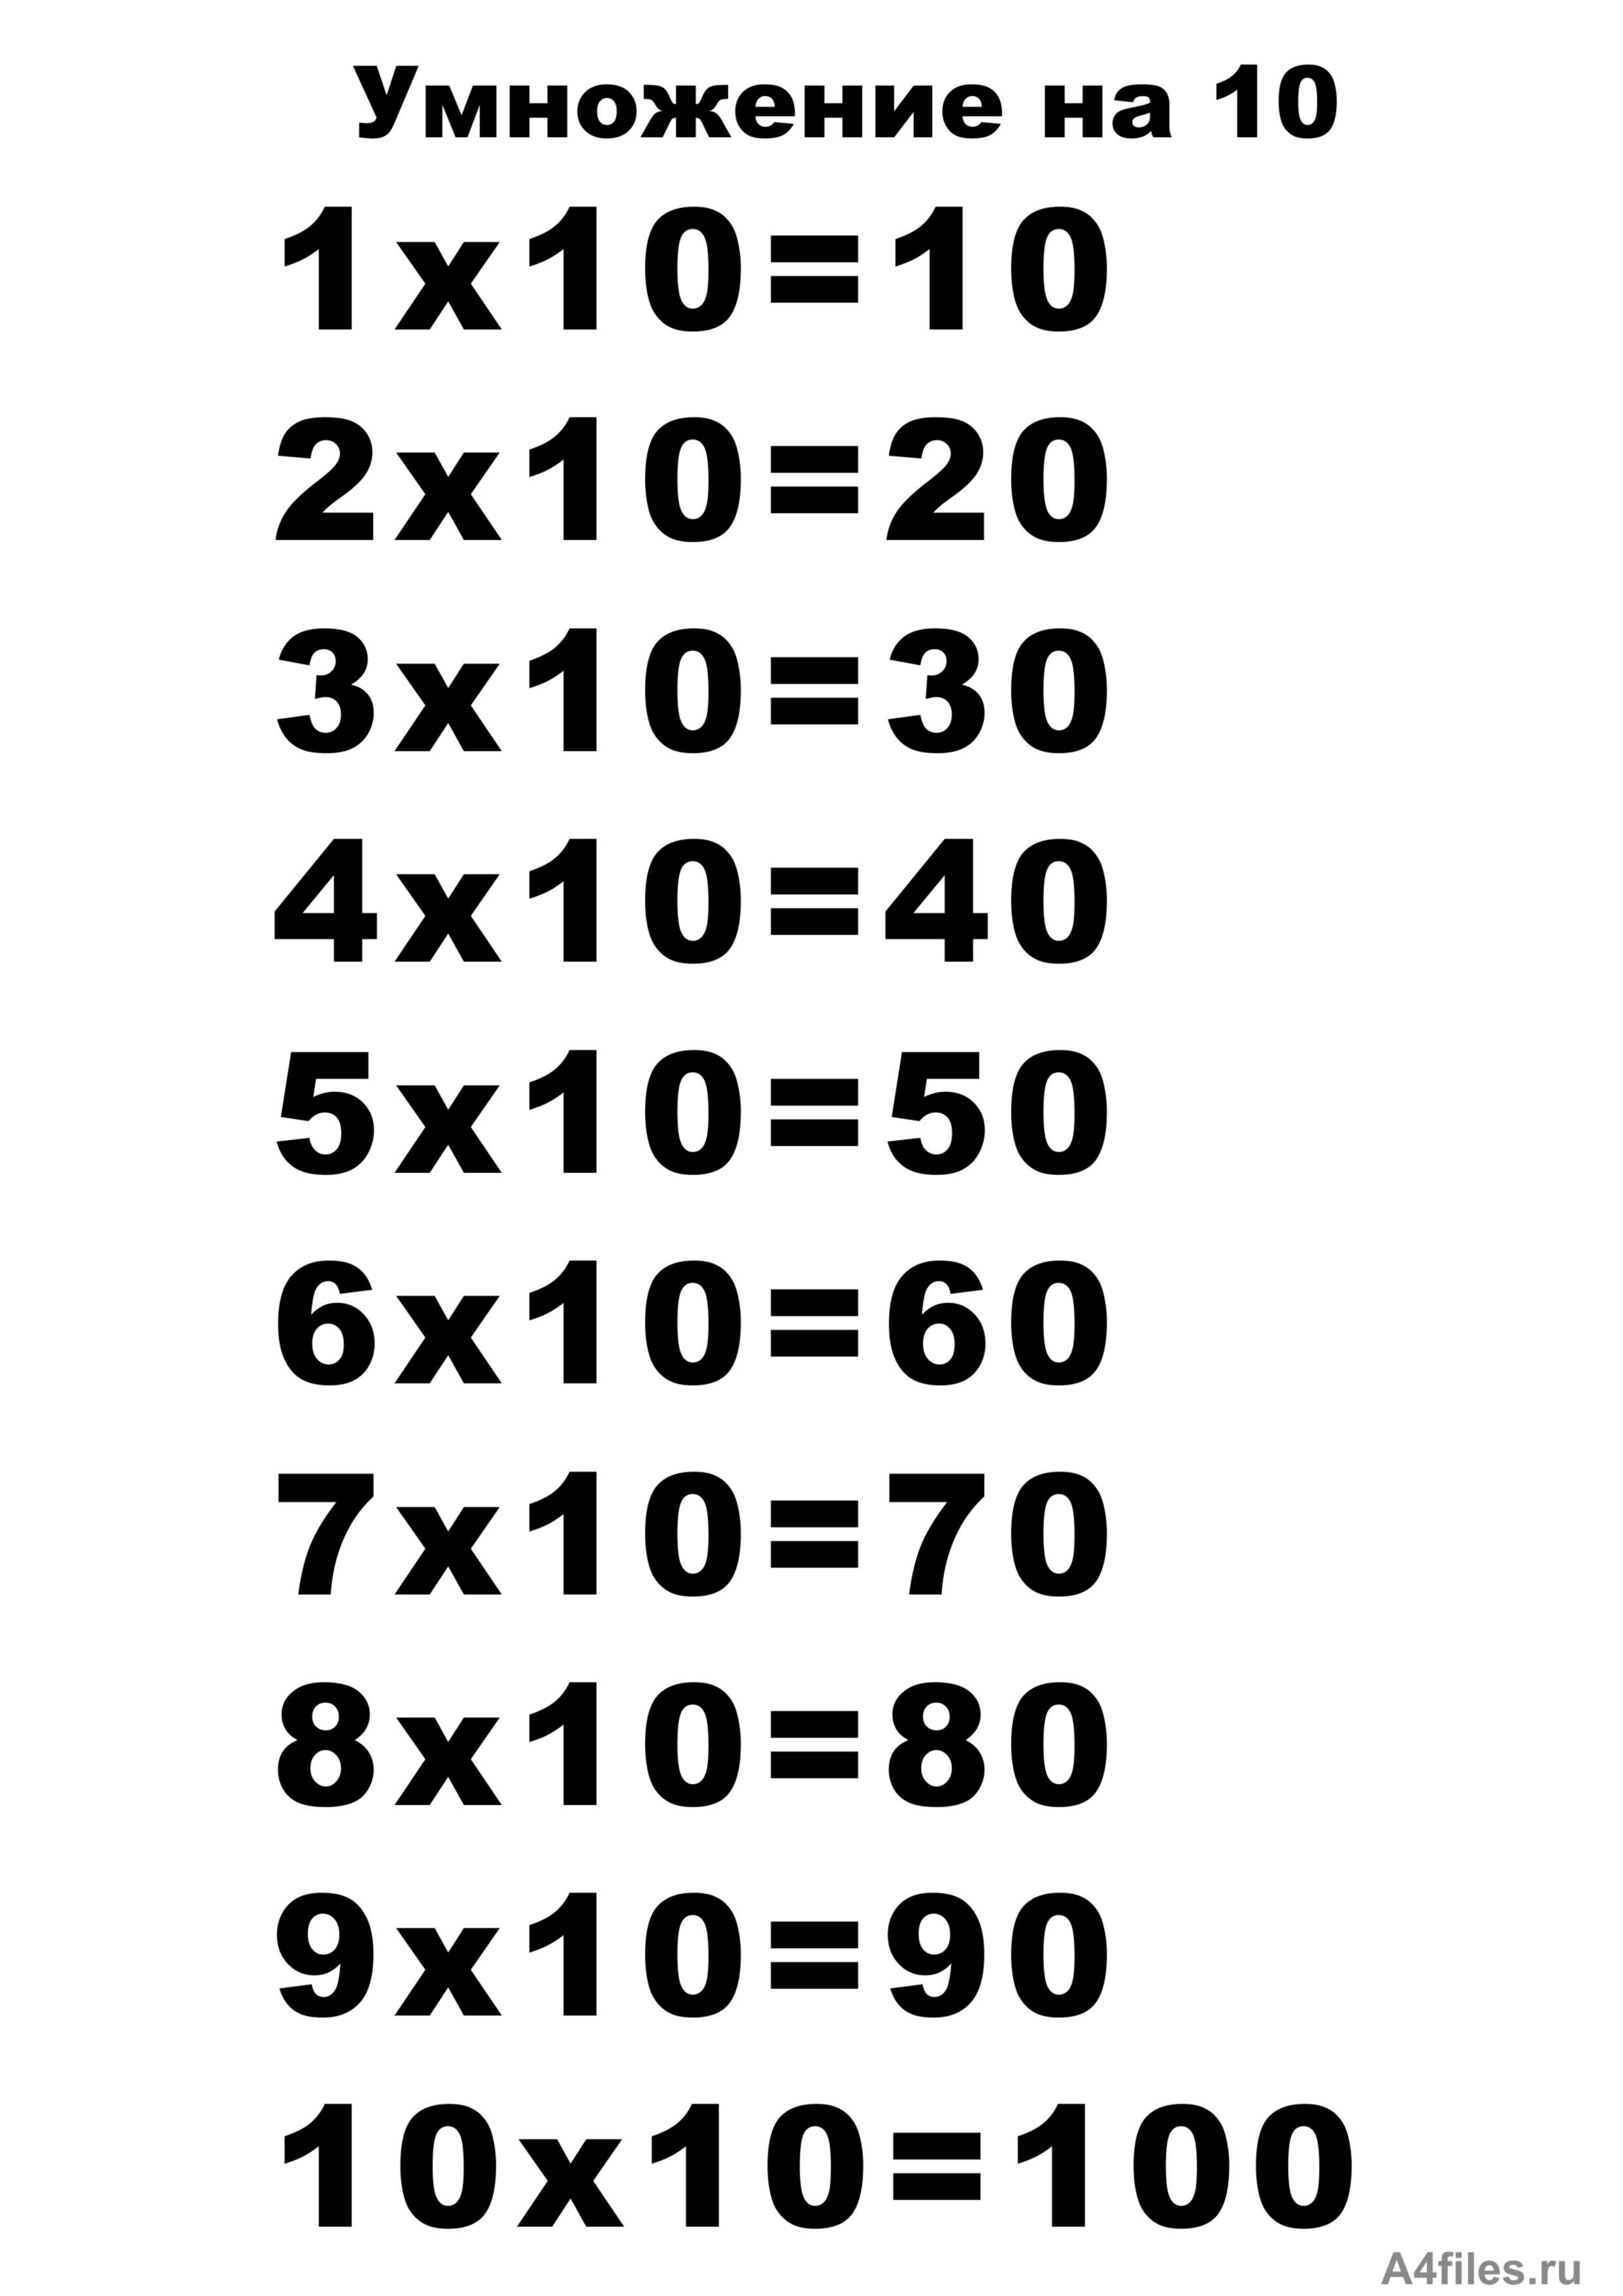 66 умножить на 10. Таблицв умнажения на "10. Таблица умножения на 10 распечатать а4 Формат. Таблица на 10. Т͇а͇б͇л͇и͇ц͇а͇ У͇М͇Н͇О͇Ж͇Е͇Н͇И͇Й͇.